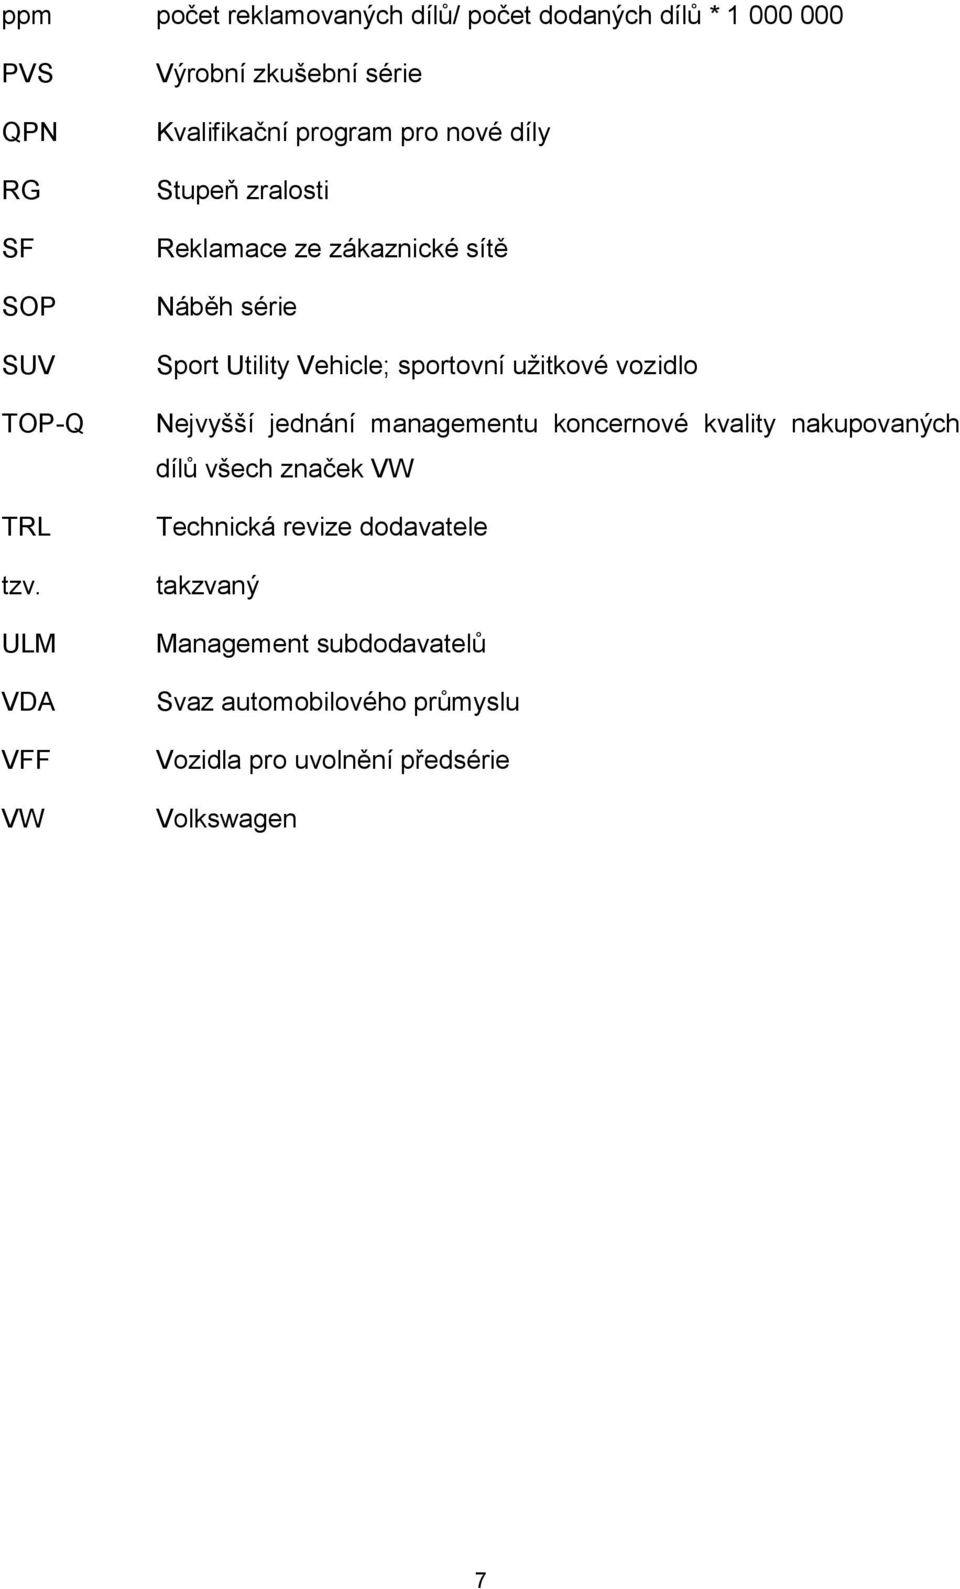 série Sport Utility Vehicle; sportovní užitkové vozidlo Nejvyšší jednání managementu koncernové kvality nakupovaných dílů